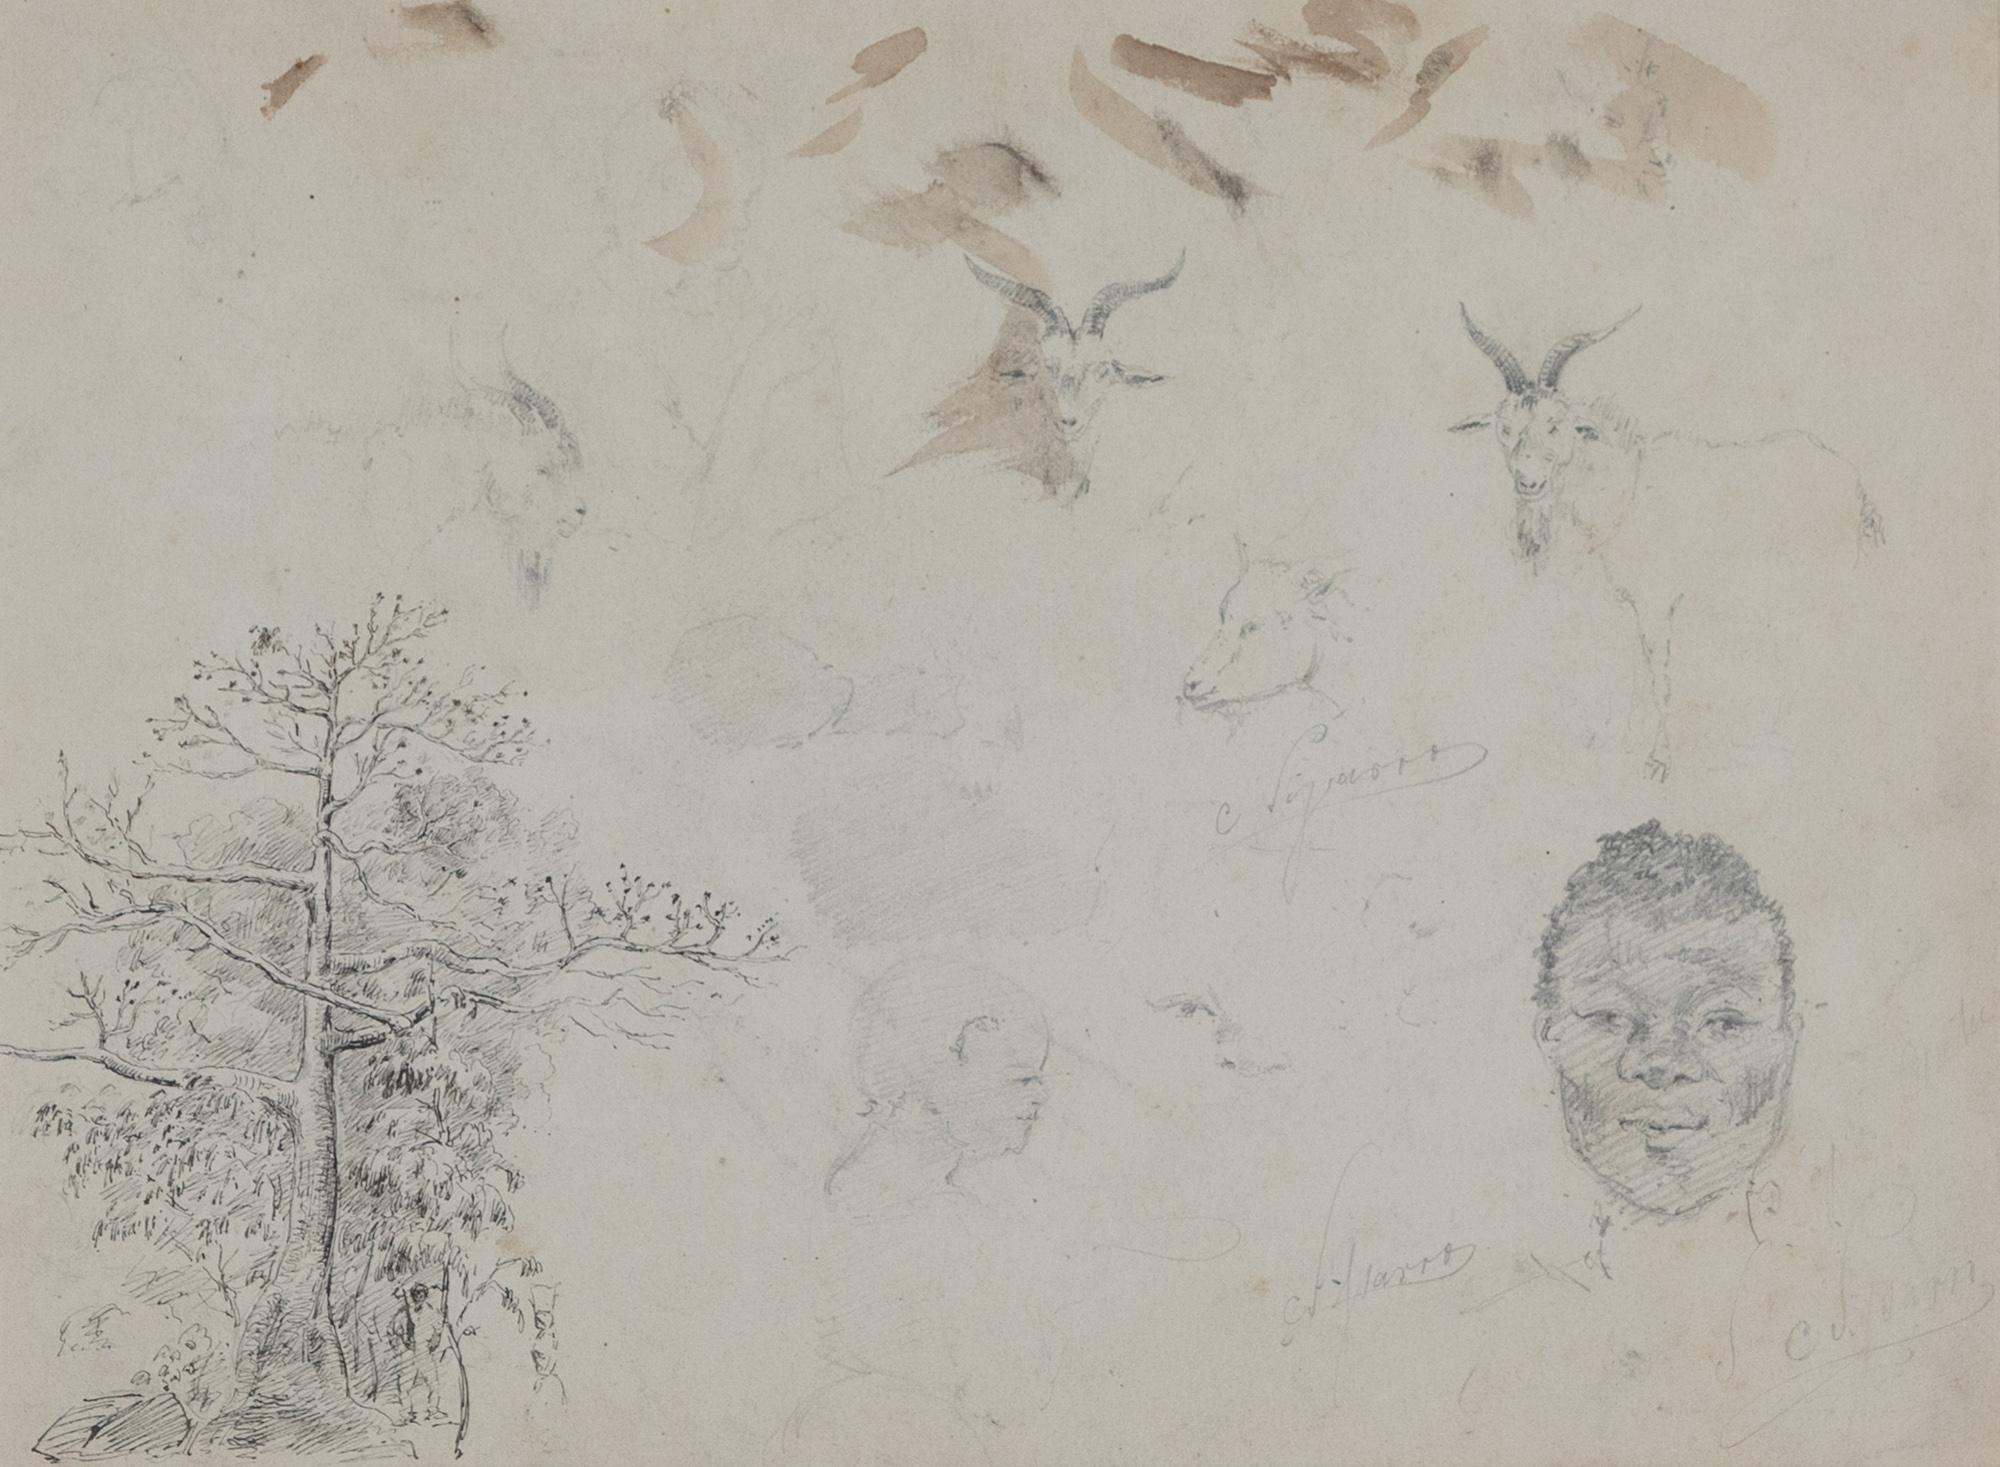 Études d'après nature by Camille Pissarro - Work on paper For Sale 1